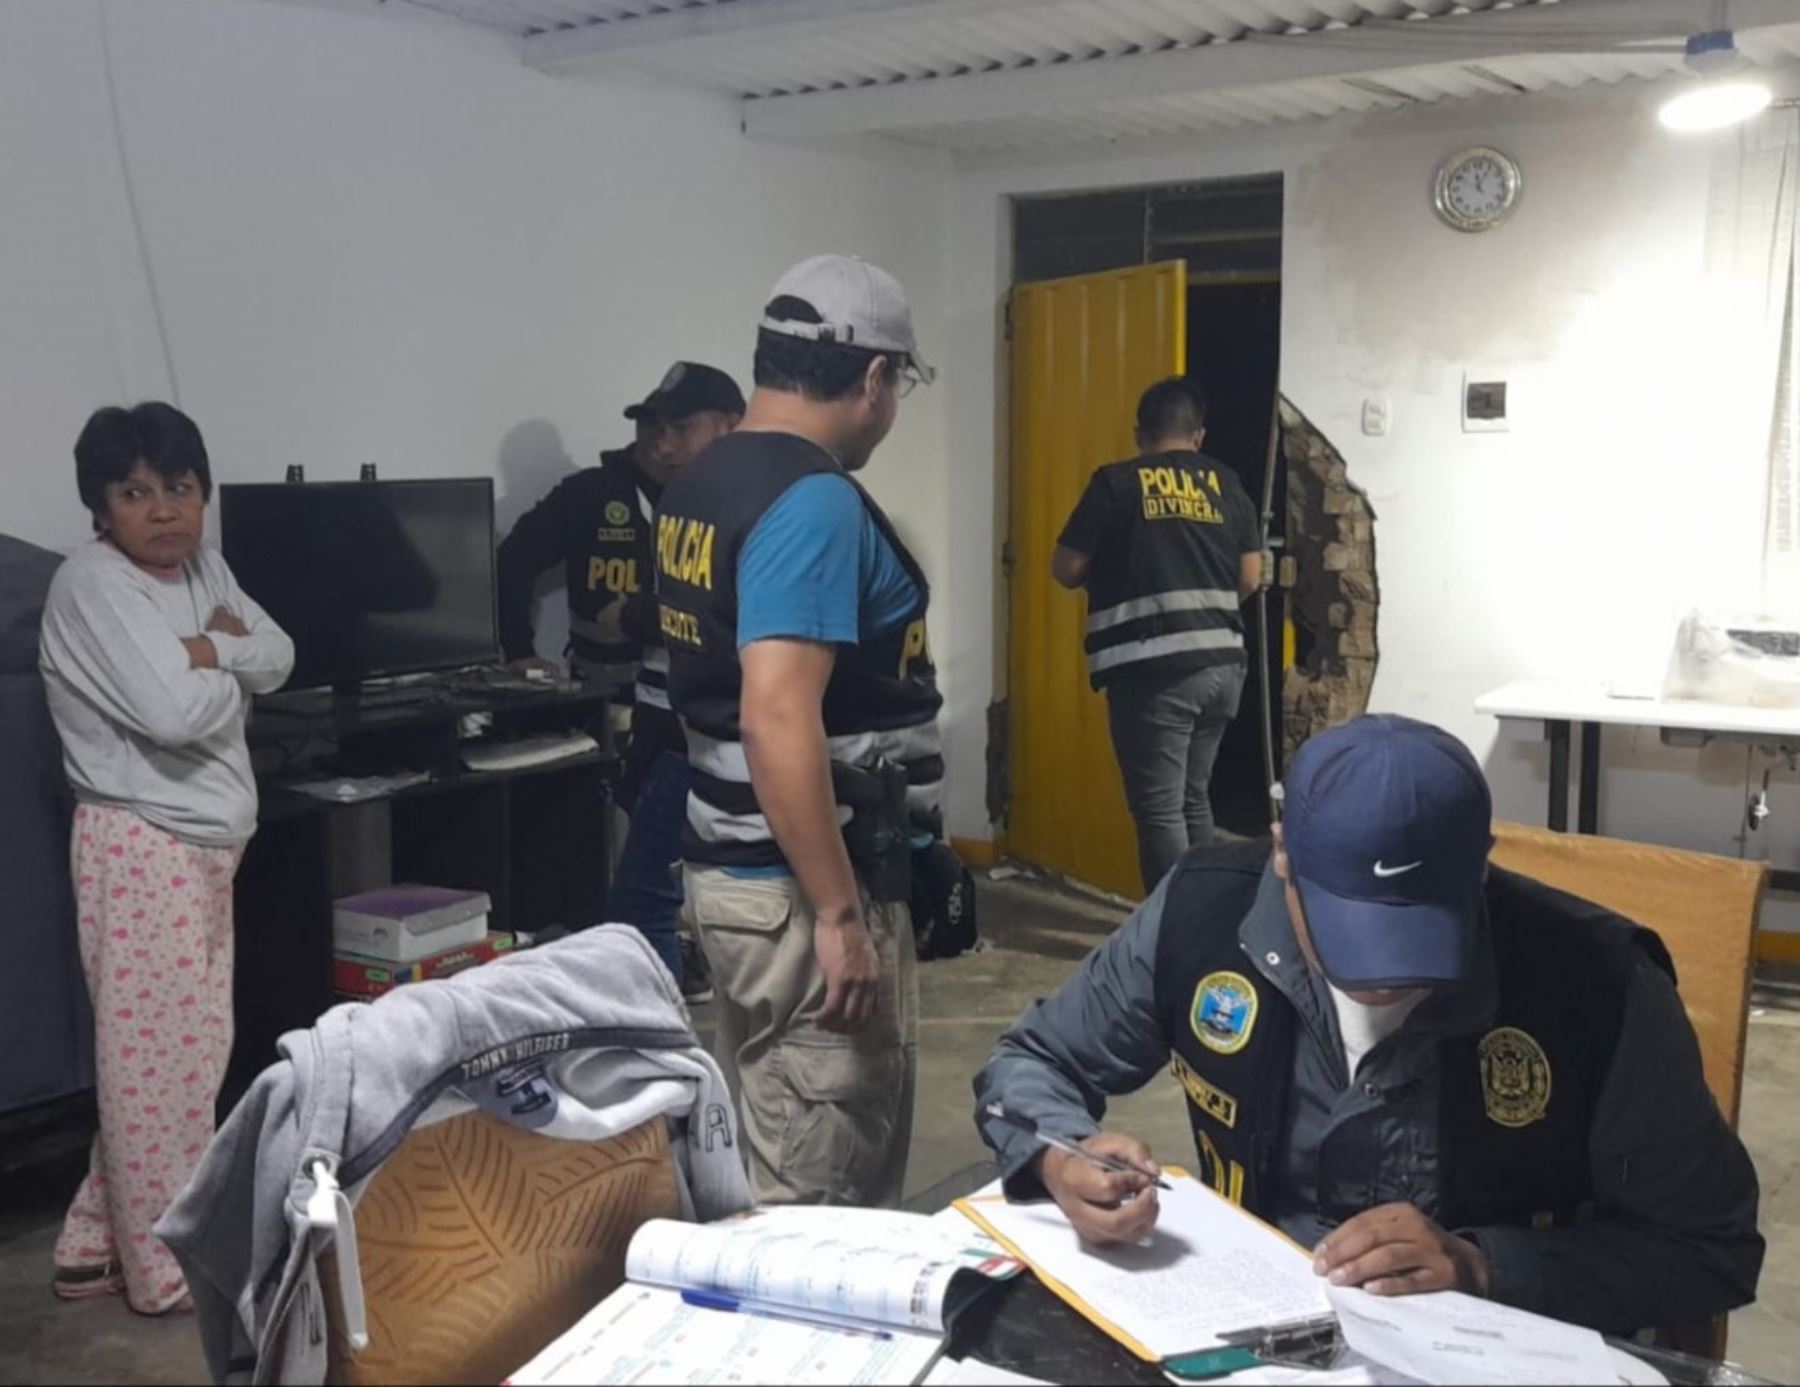 Policía Nacional detiene en Trujillo a siete personas por presuntos vínculos con Sendero Luminoso y de estar implicados en el presunto adoctrinamiento subversivo. ANDINA/Difusión